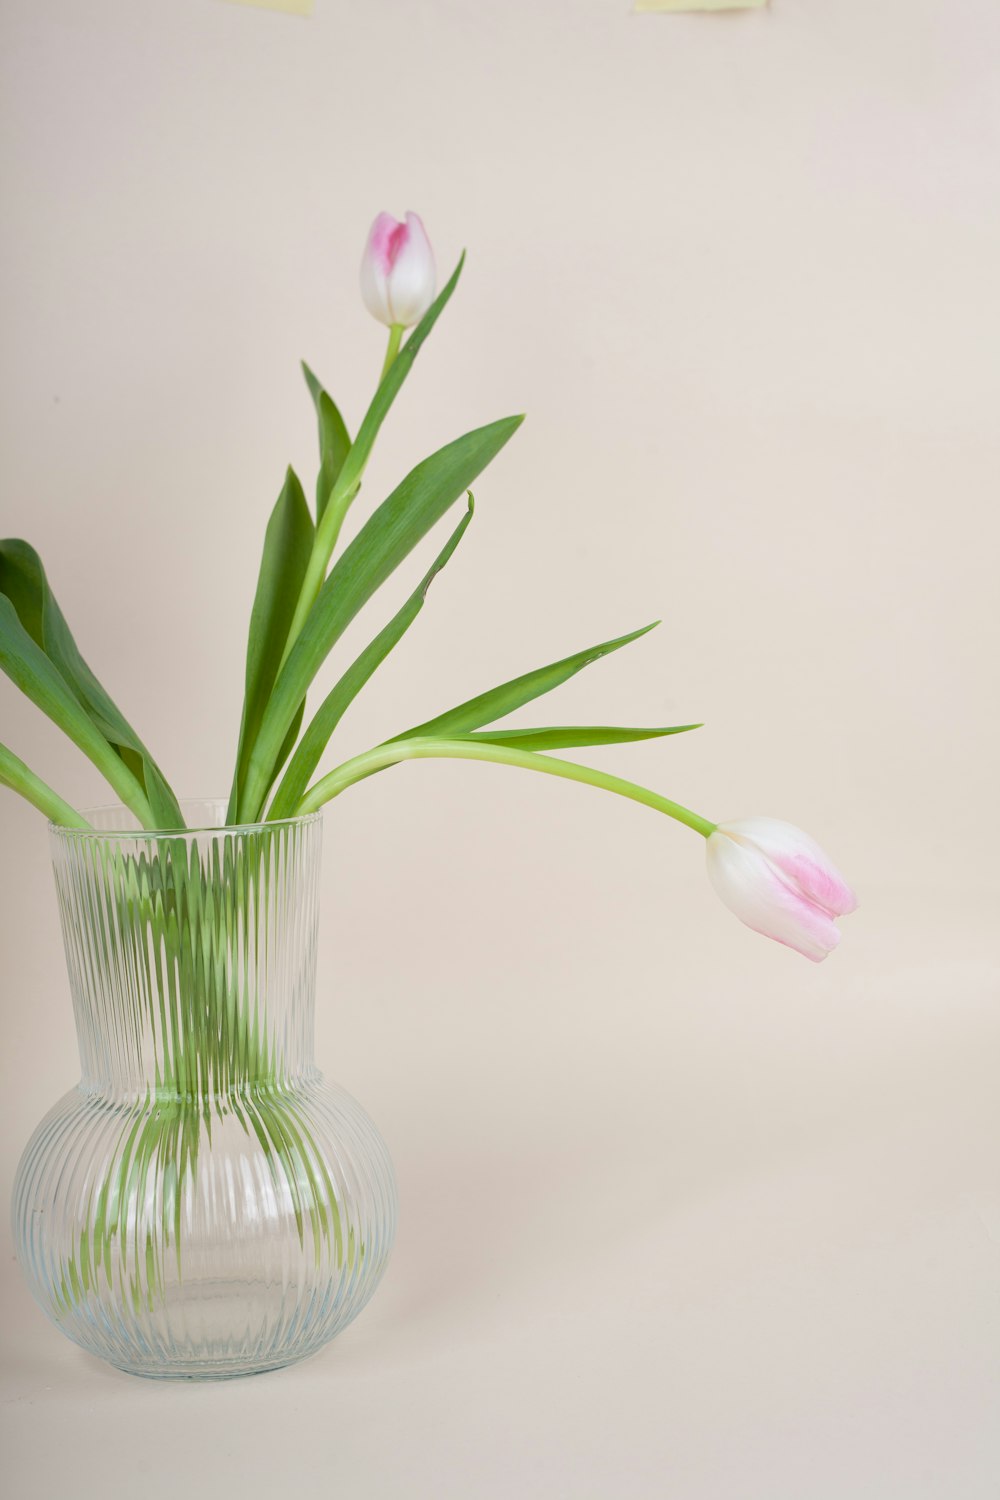 un vase en verre rempli de tulipes roses et blanches